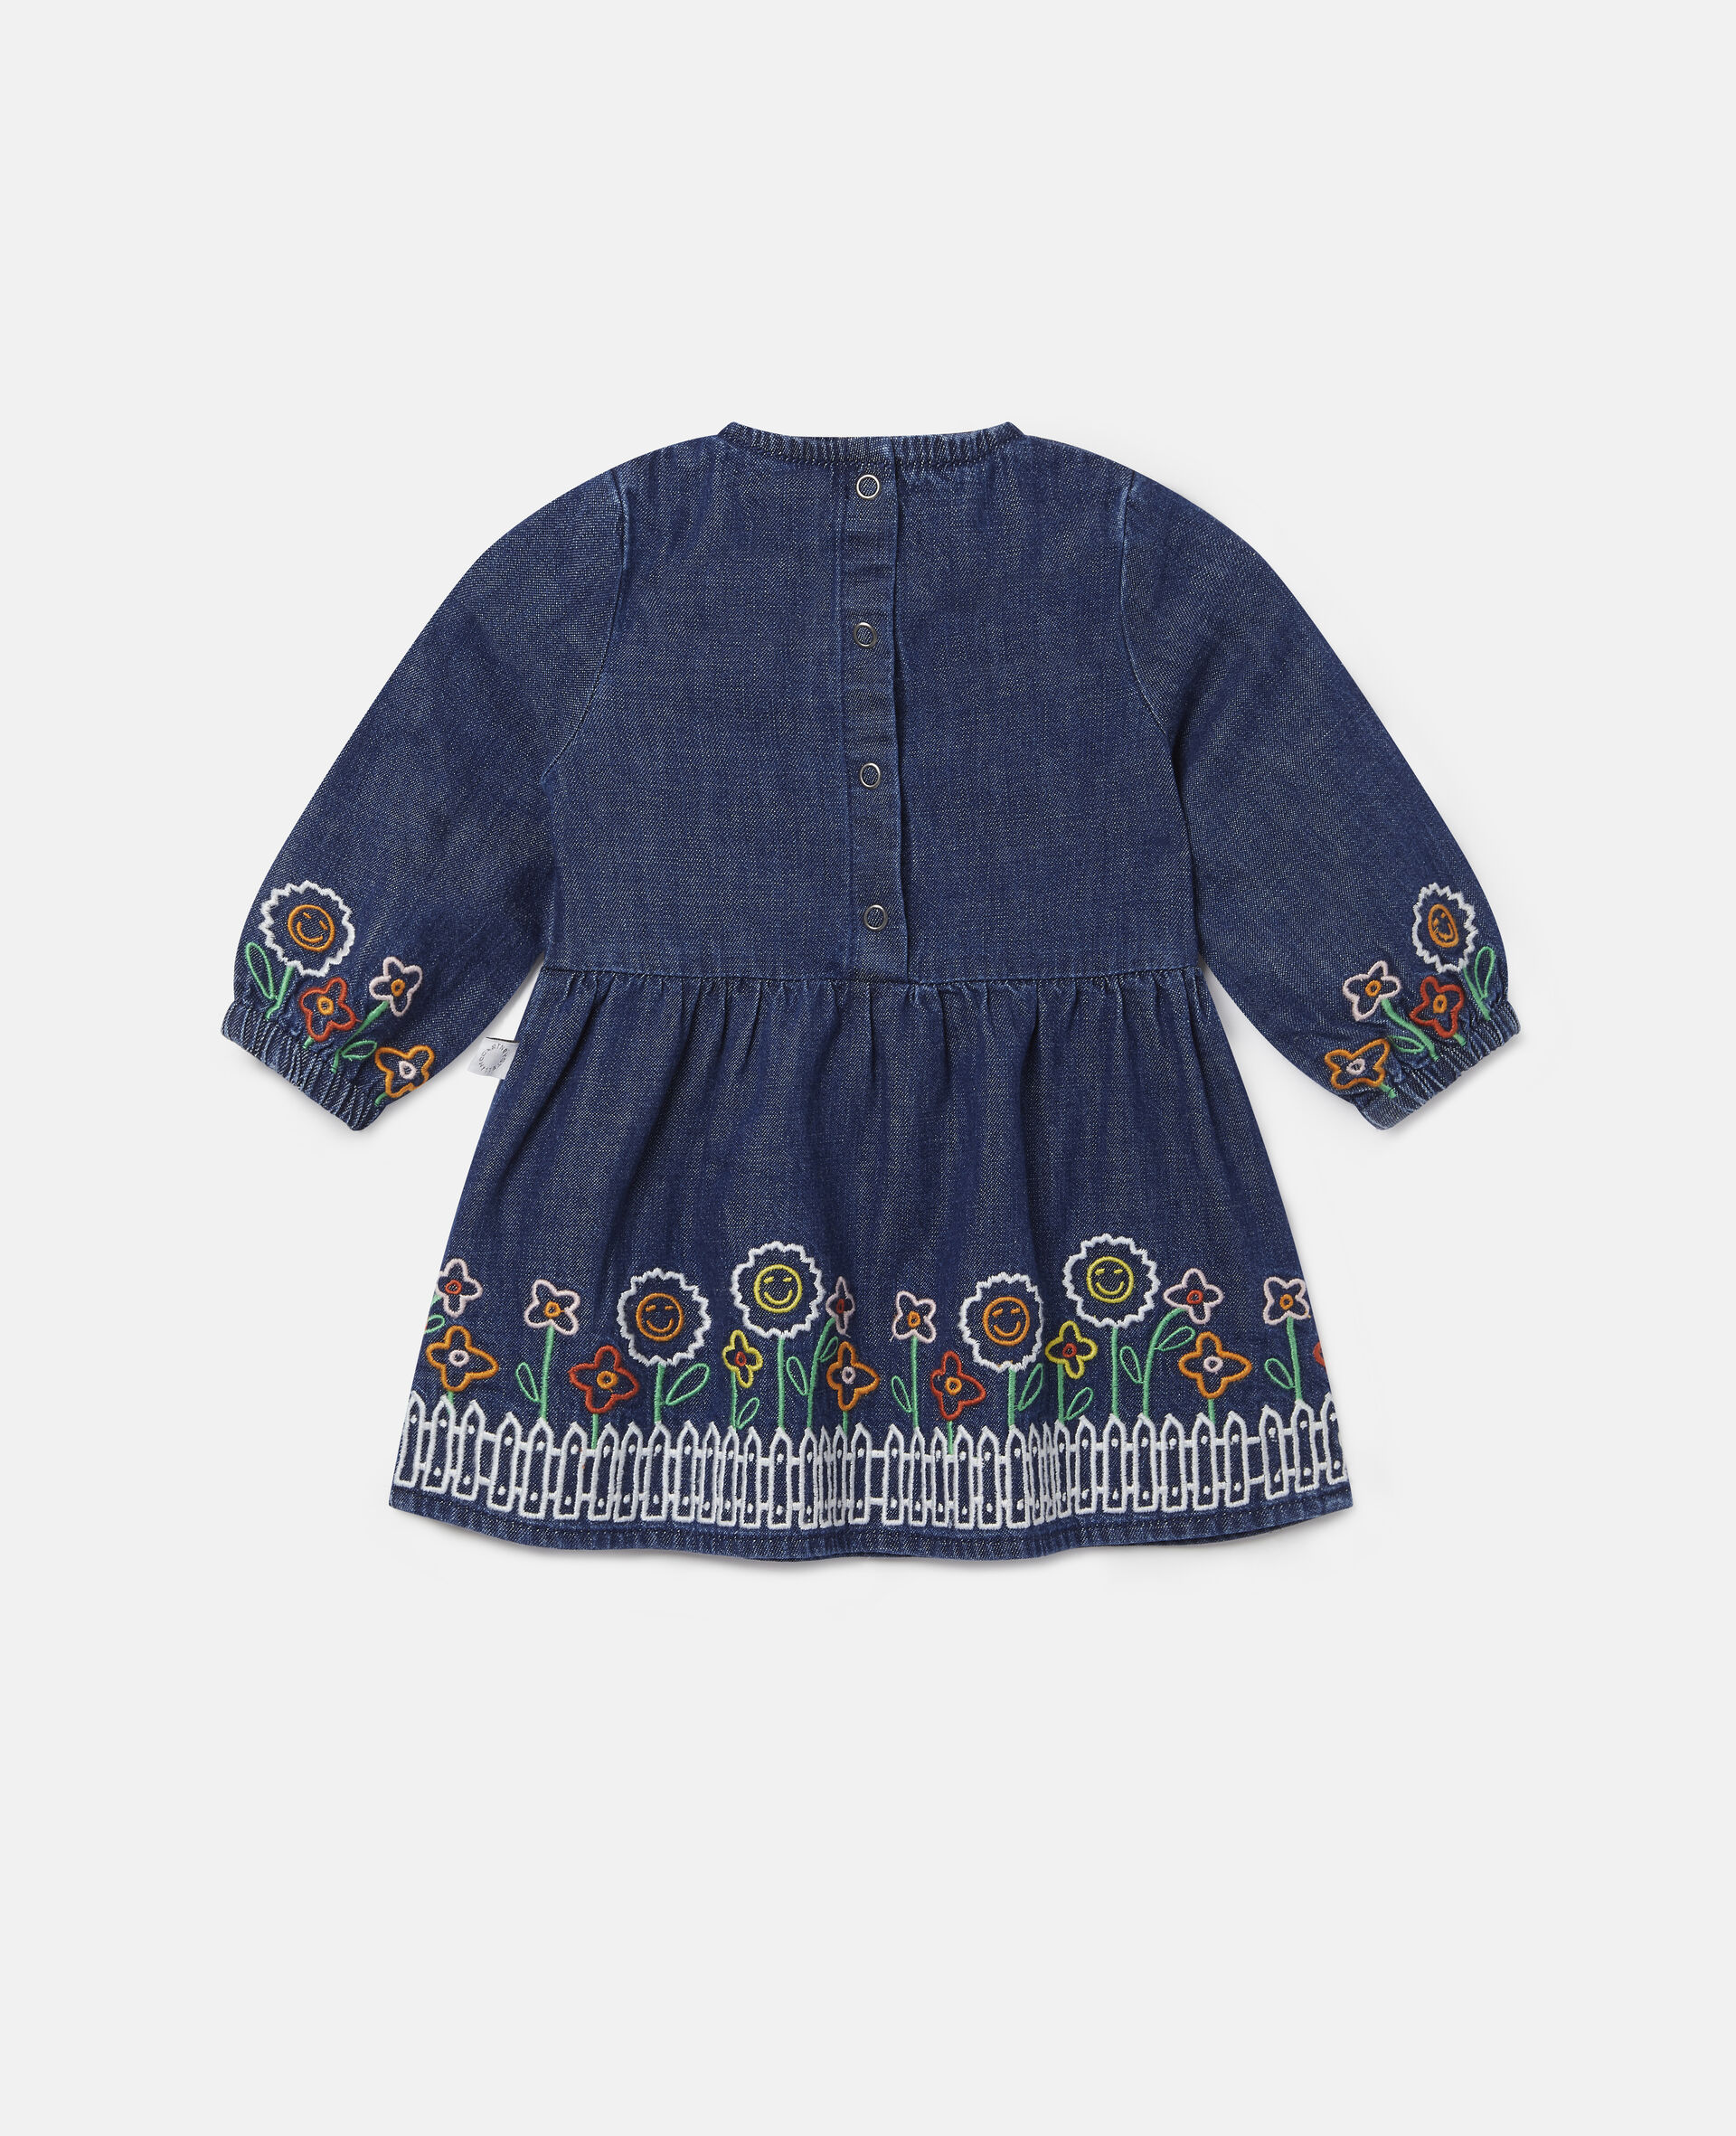 Embroidered Garden Denim Dress-Blue-large image number 3